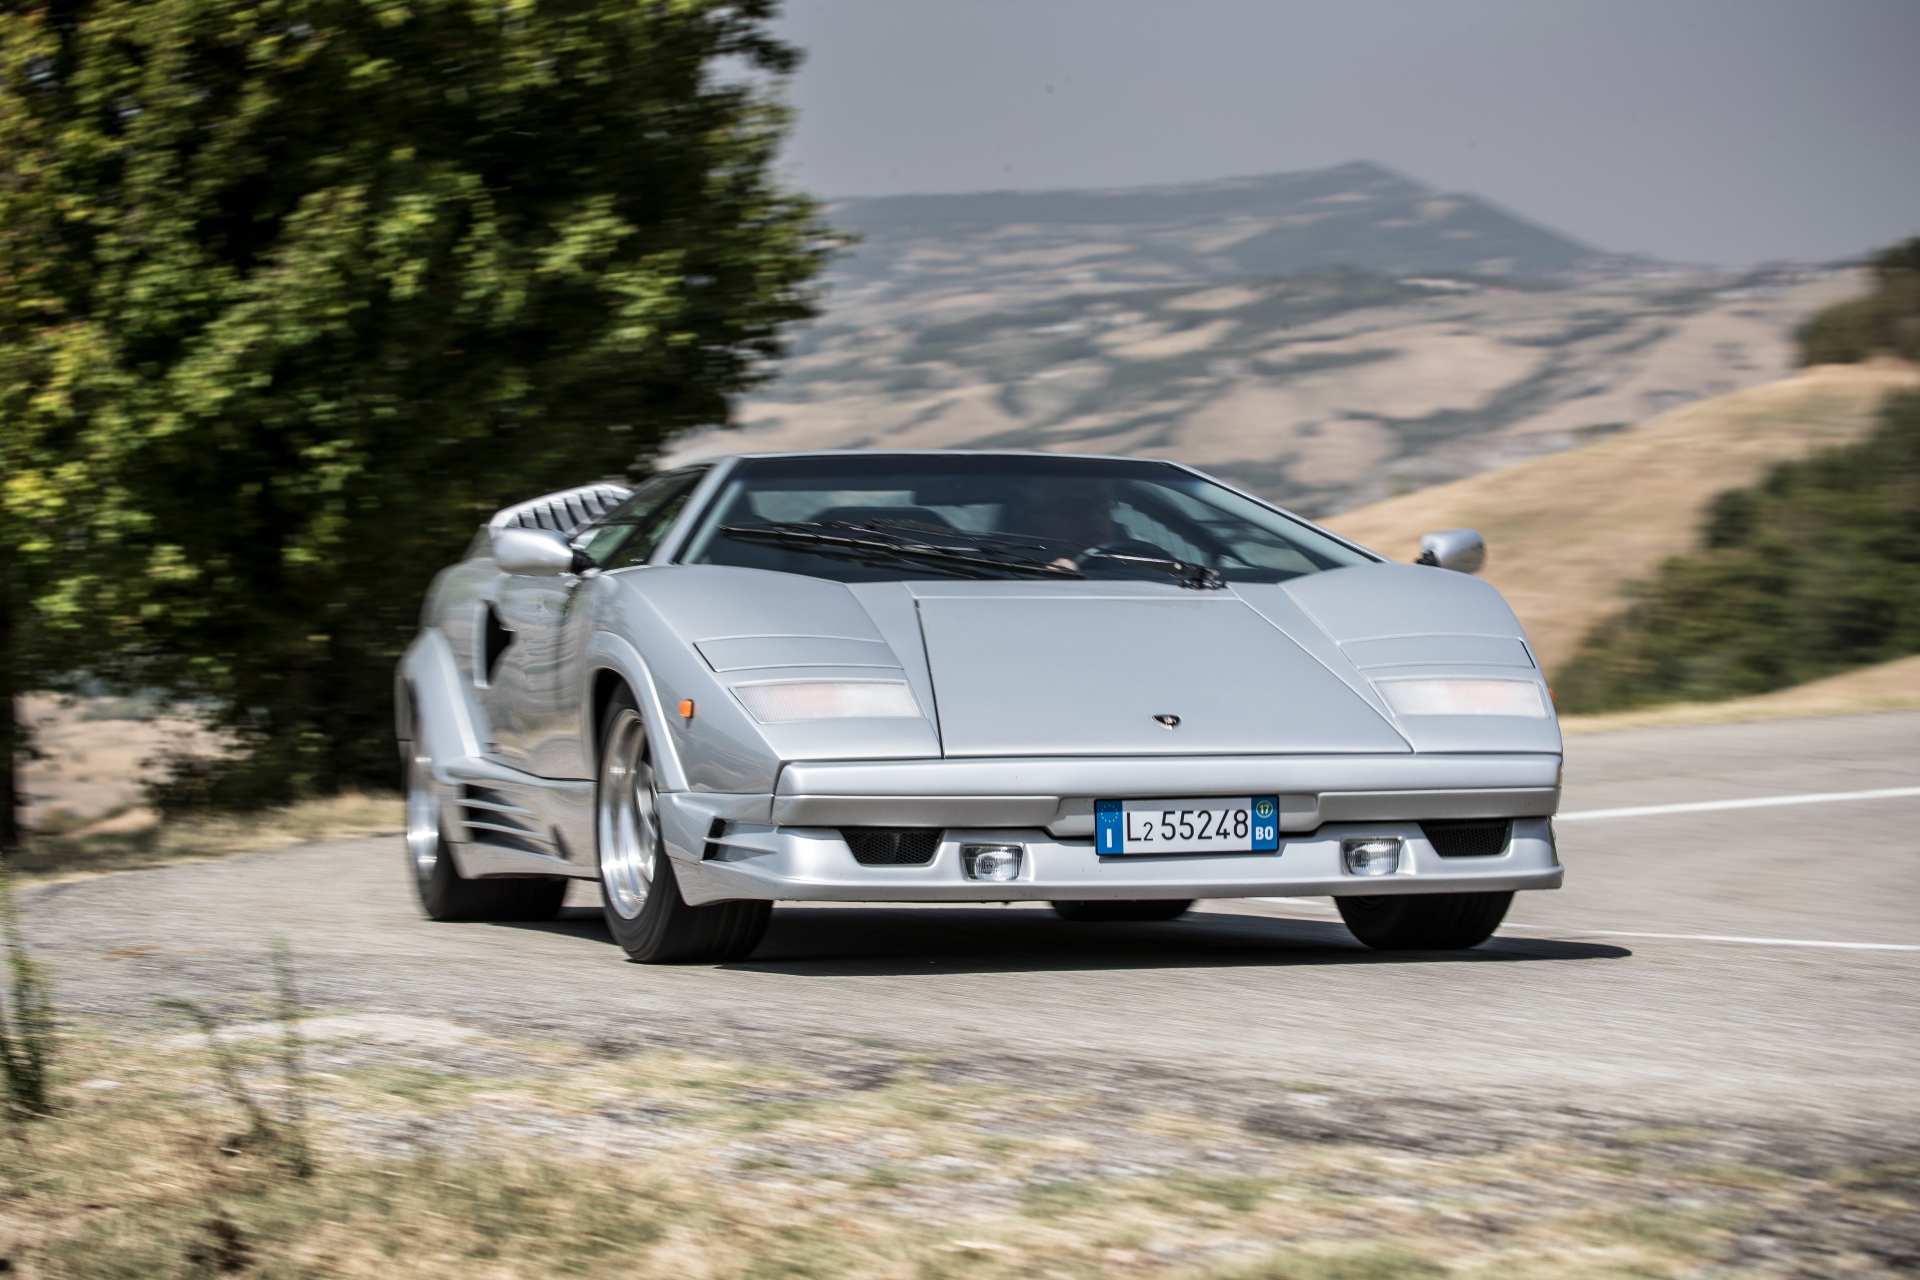 Lamborghini Countach 25 anniversary